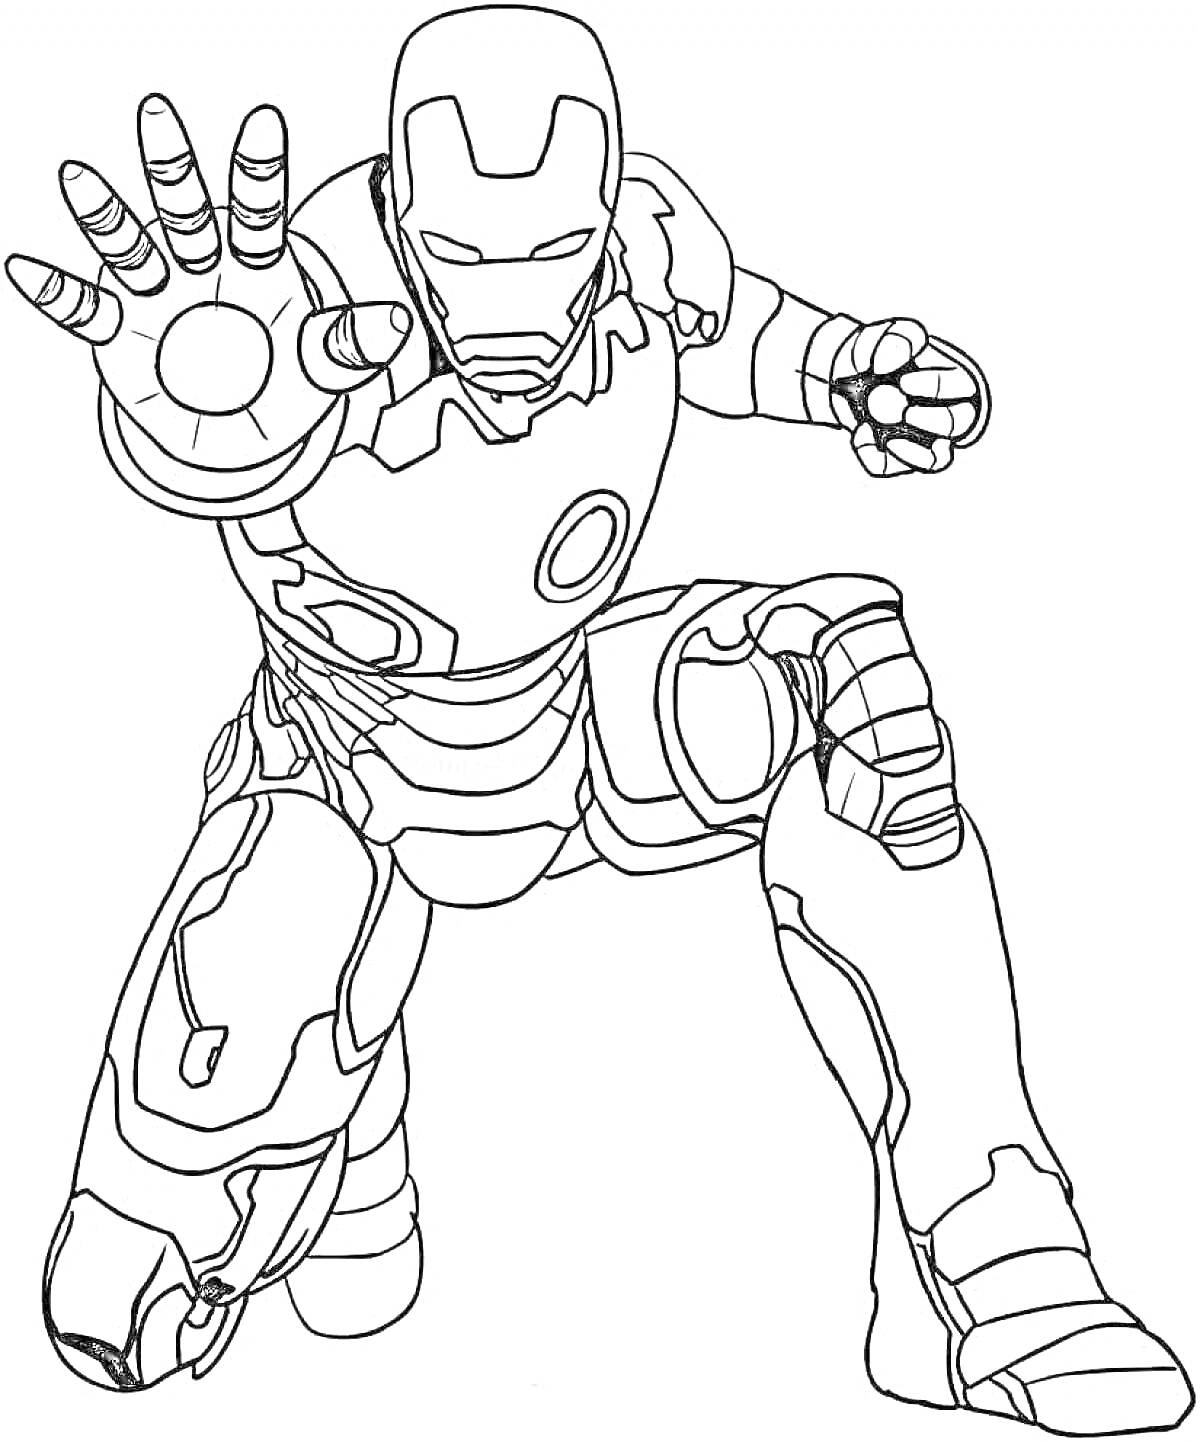 Раскраска Железный человек в динамичной позе с поднятой рукой, на колене и сжатым кулаком